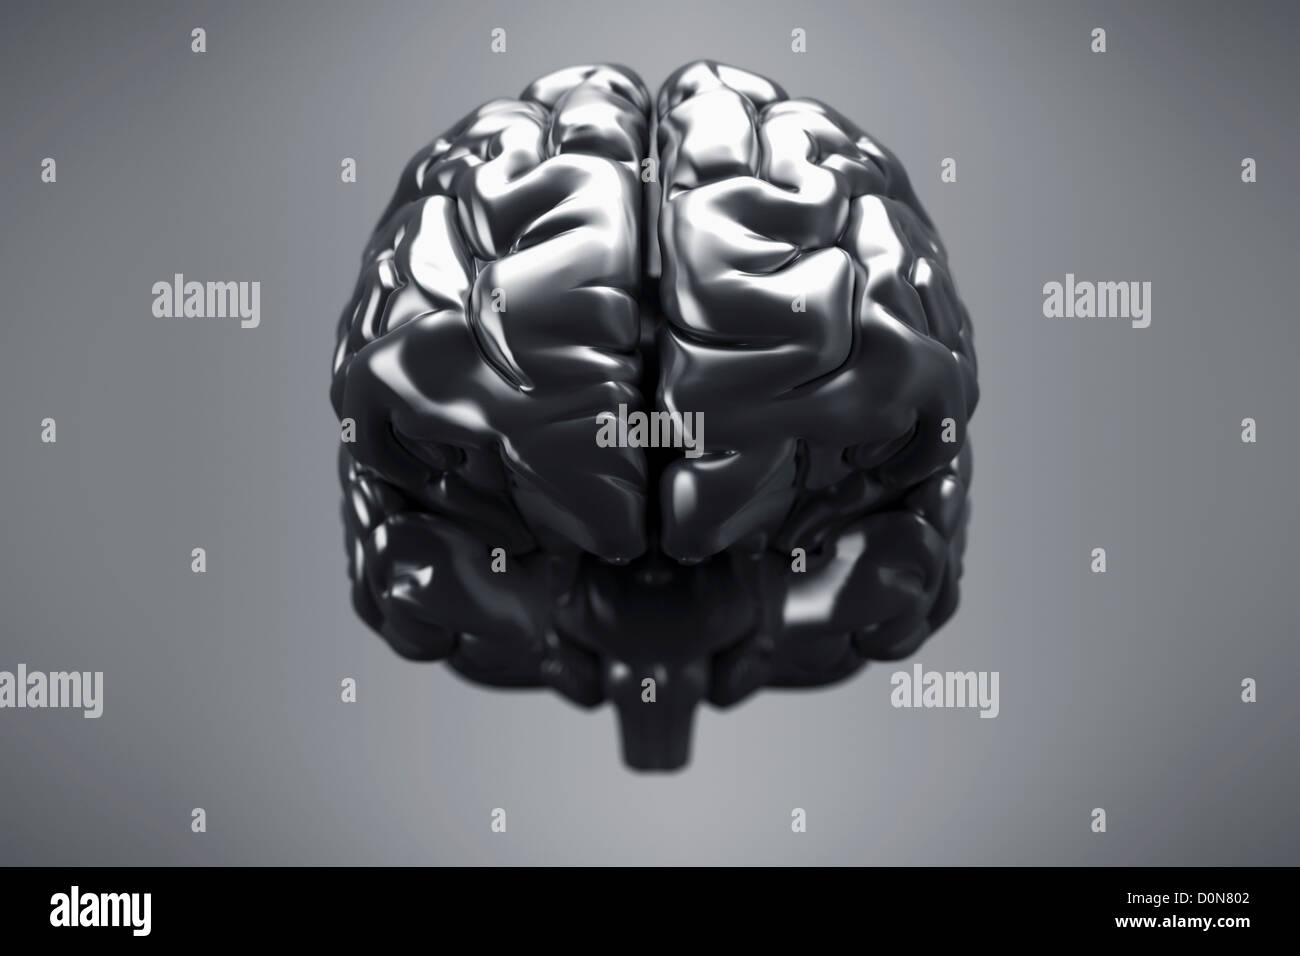 Una vista frontale di un cervello metallico con gli emisferi cerebrali, cervelletto e tronco cerebrale visibile. Foto Stock